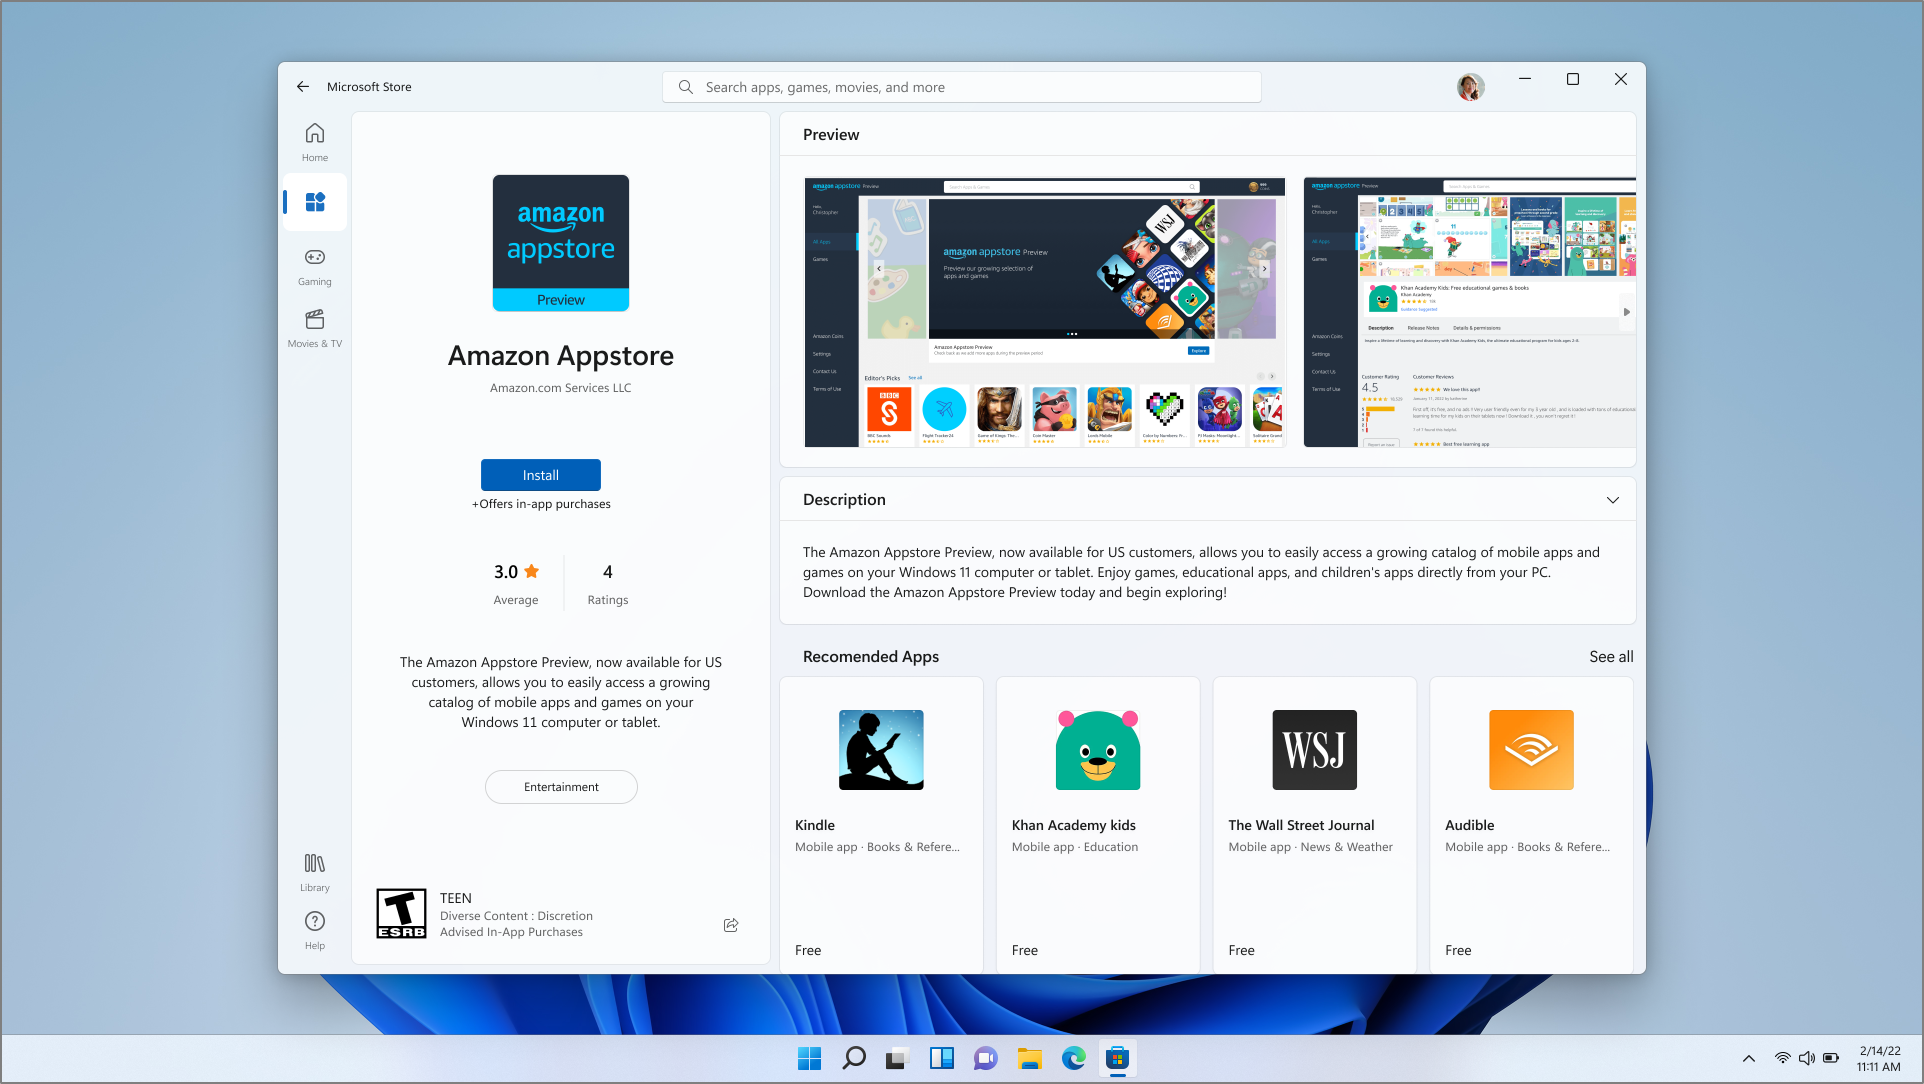 Capture d’écran de la page de téléchargement Amazon Appstore dans l’application du Microsoft Store.